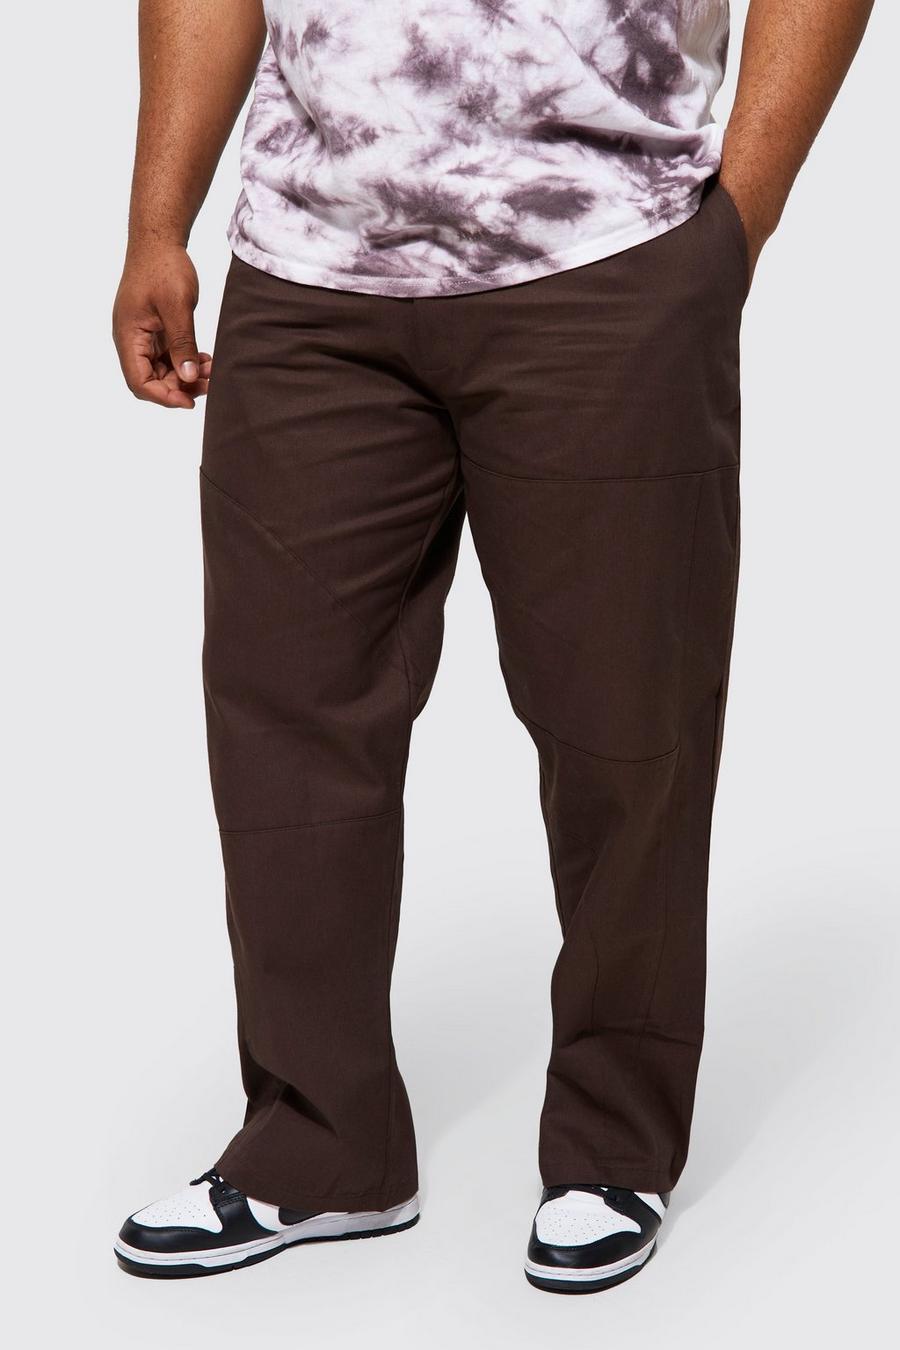 Chocolate marrón מכנסיים מאריג טוויל בגזרה ישרה עם תפרים מידות גדולות